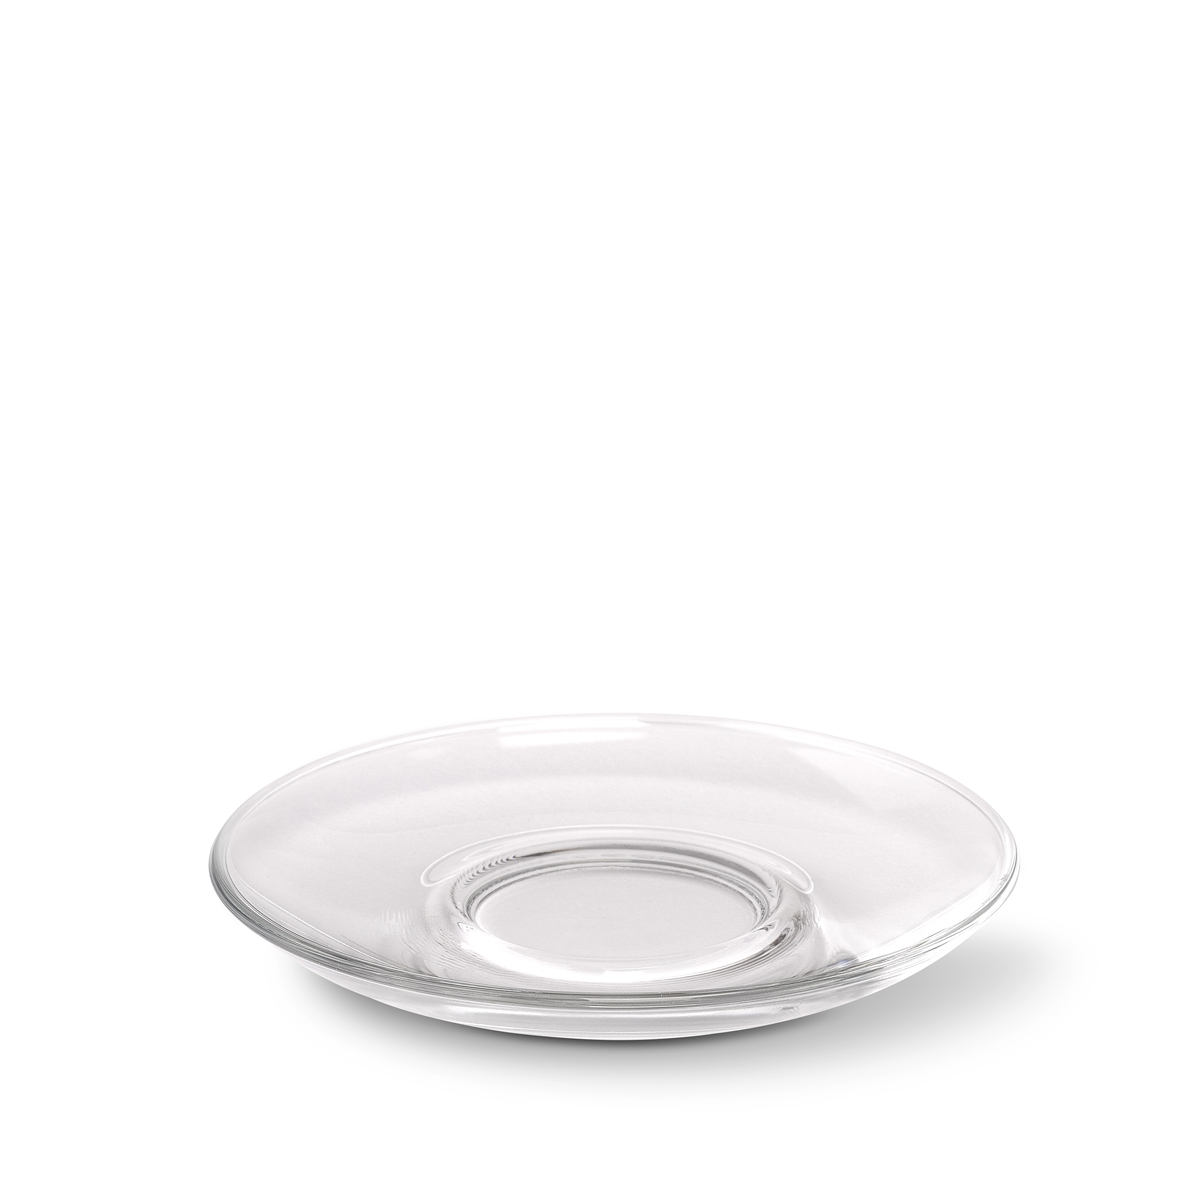 Glass saucer